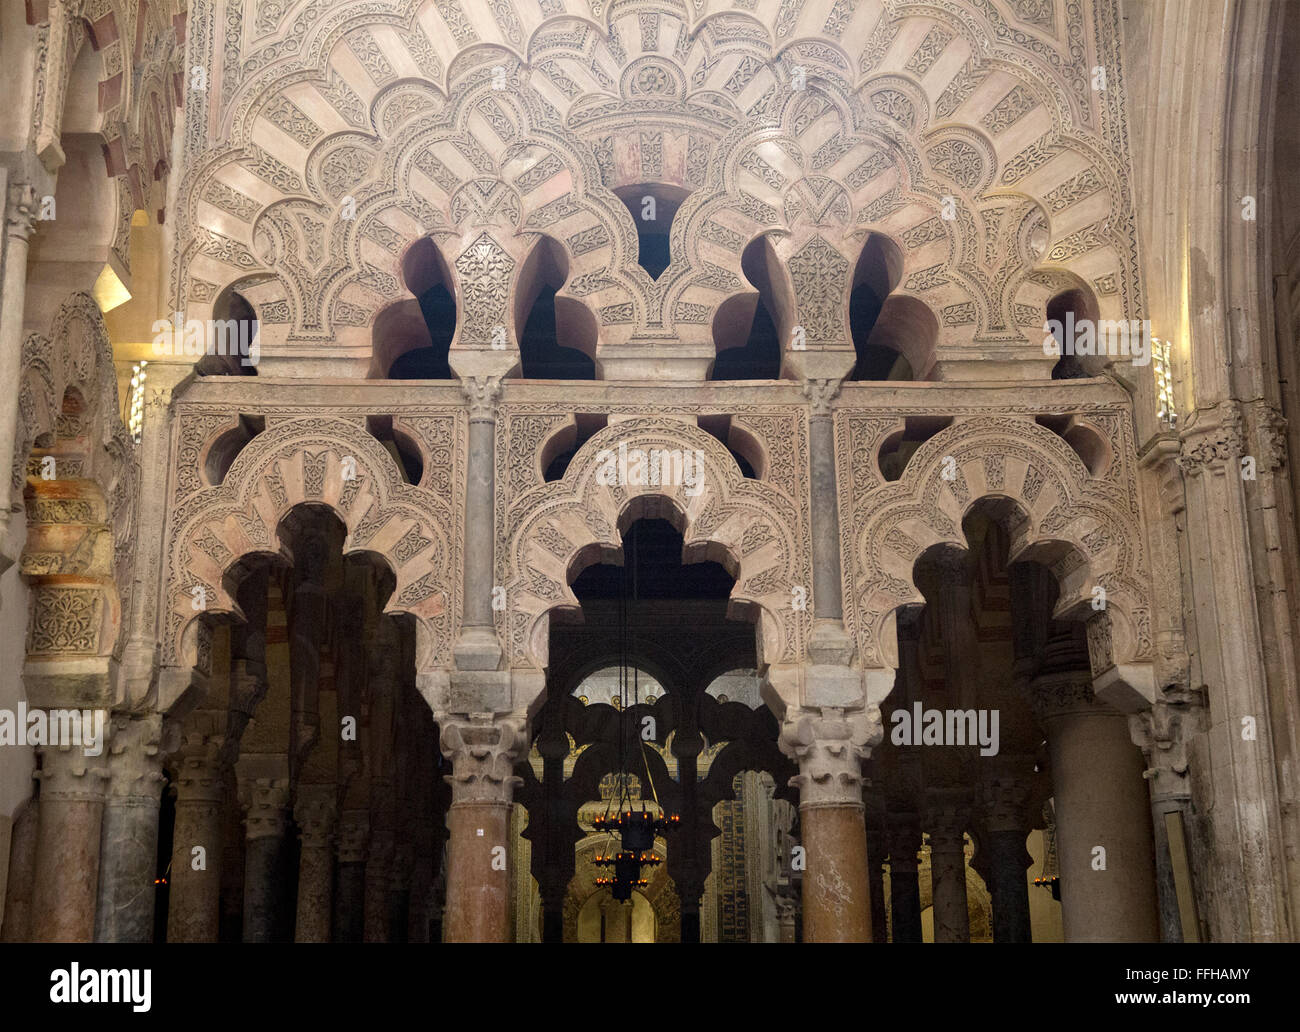 Ornamentación en piedra de arcos en la antigua Mezquita de Córdoba, Córdoba, España Foto de stock